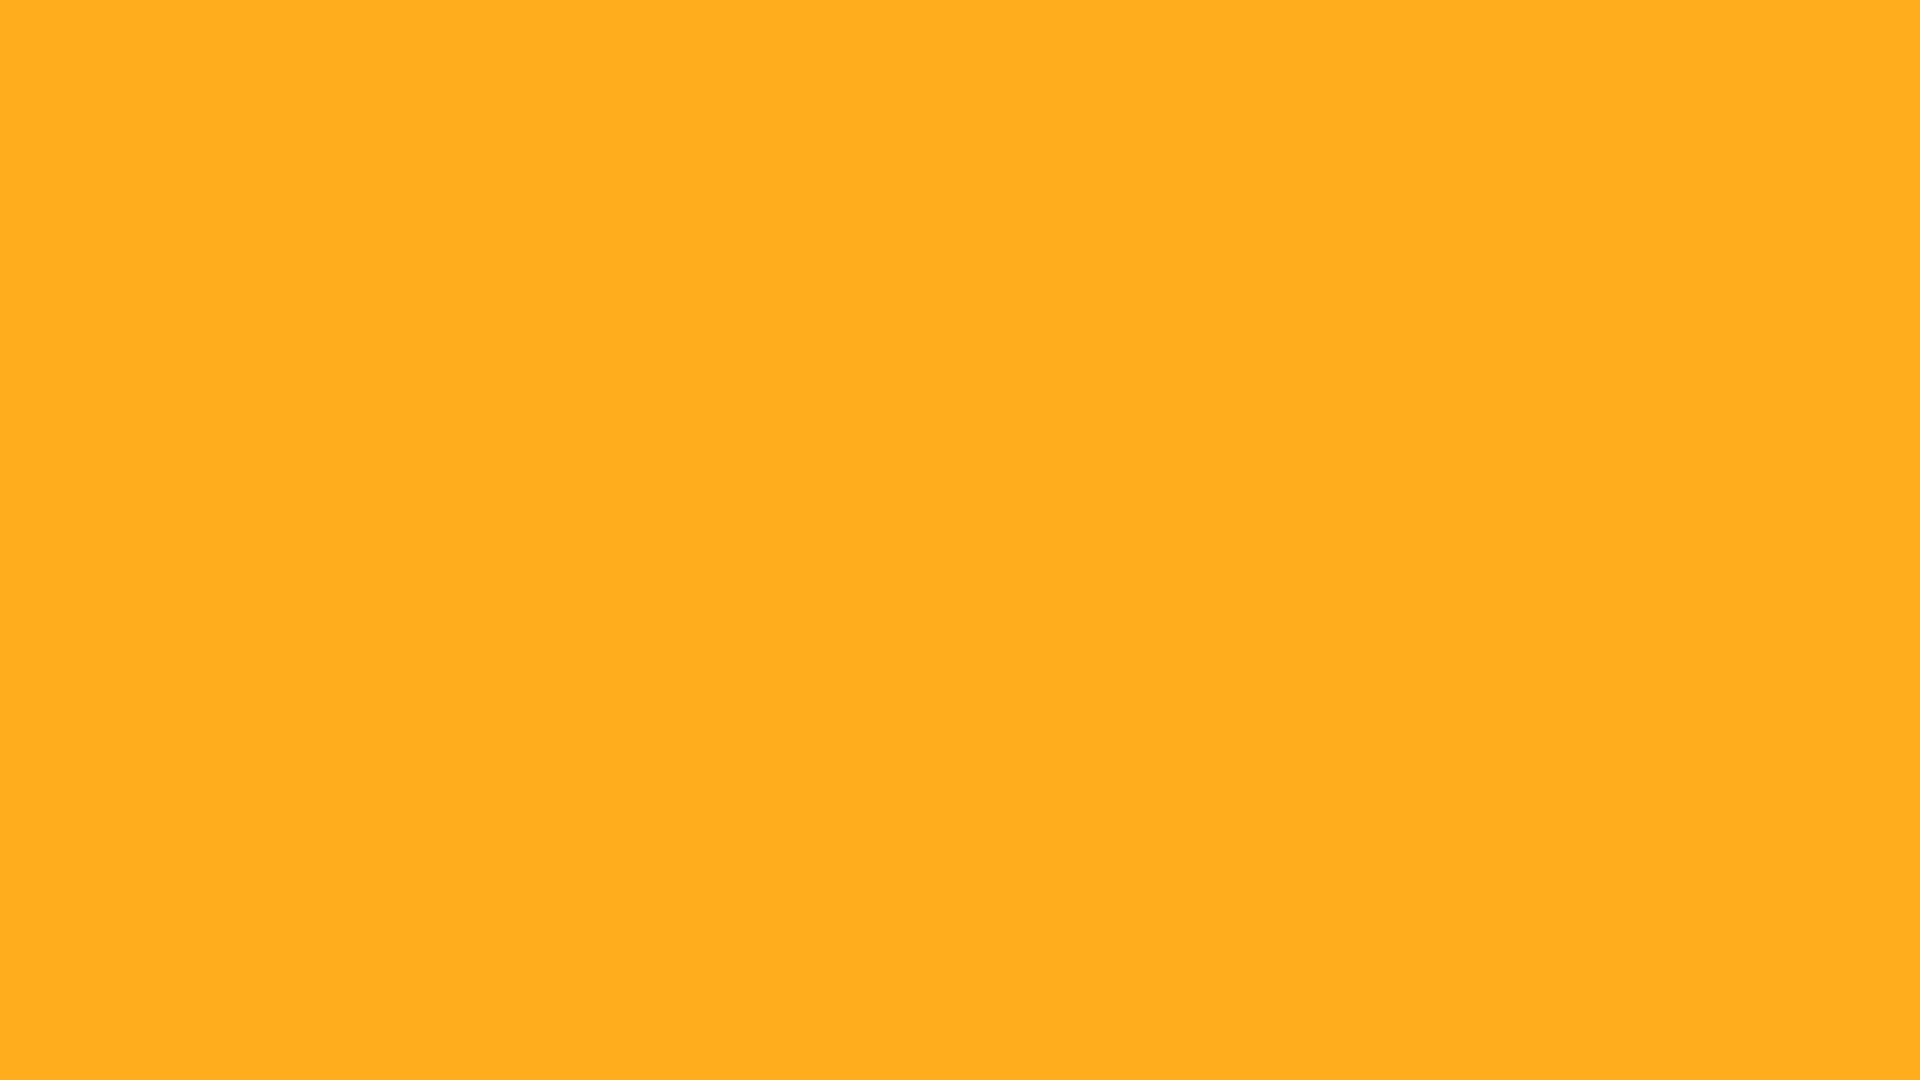 Màu cam sáng là biểu tượng của sự nhiệt tình, sáng lạn và sự đam mê. Bạn có biết rằng màu cam sáng còn đầy đủ các mã màu HTML để bạn sử dụng? Hãy tìm hiểu thêm về màu sắc này và sử dụng nó để tạo ra một trang web thu hút sự chú ý của khách hàng.